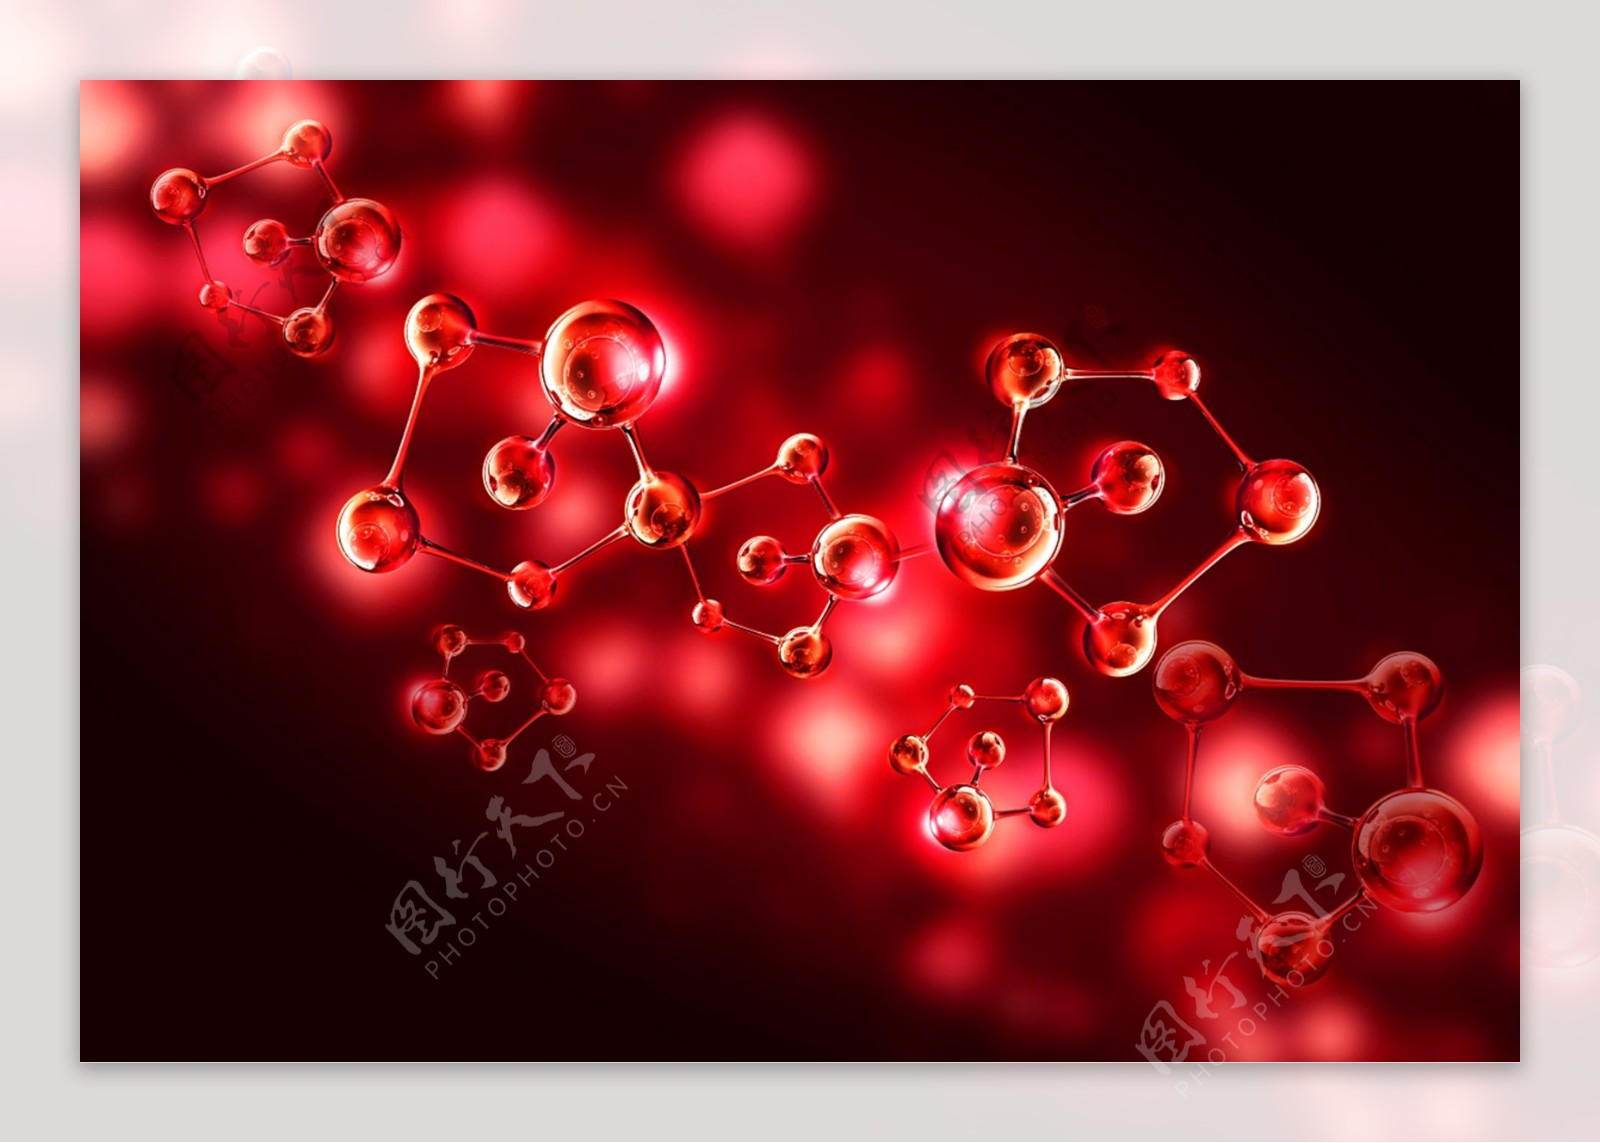 胶原蛋白红色分子结构素材